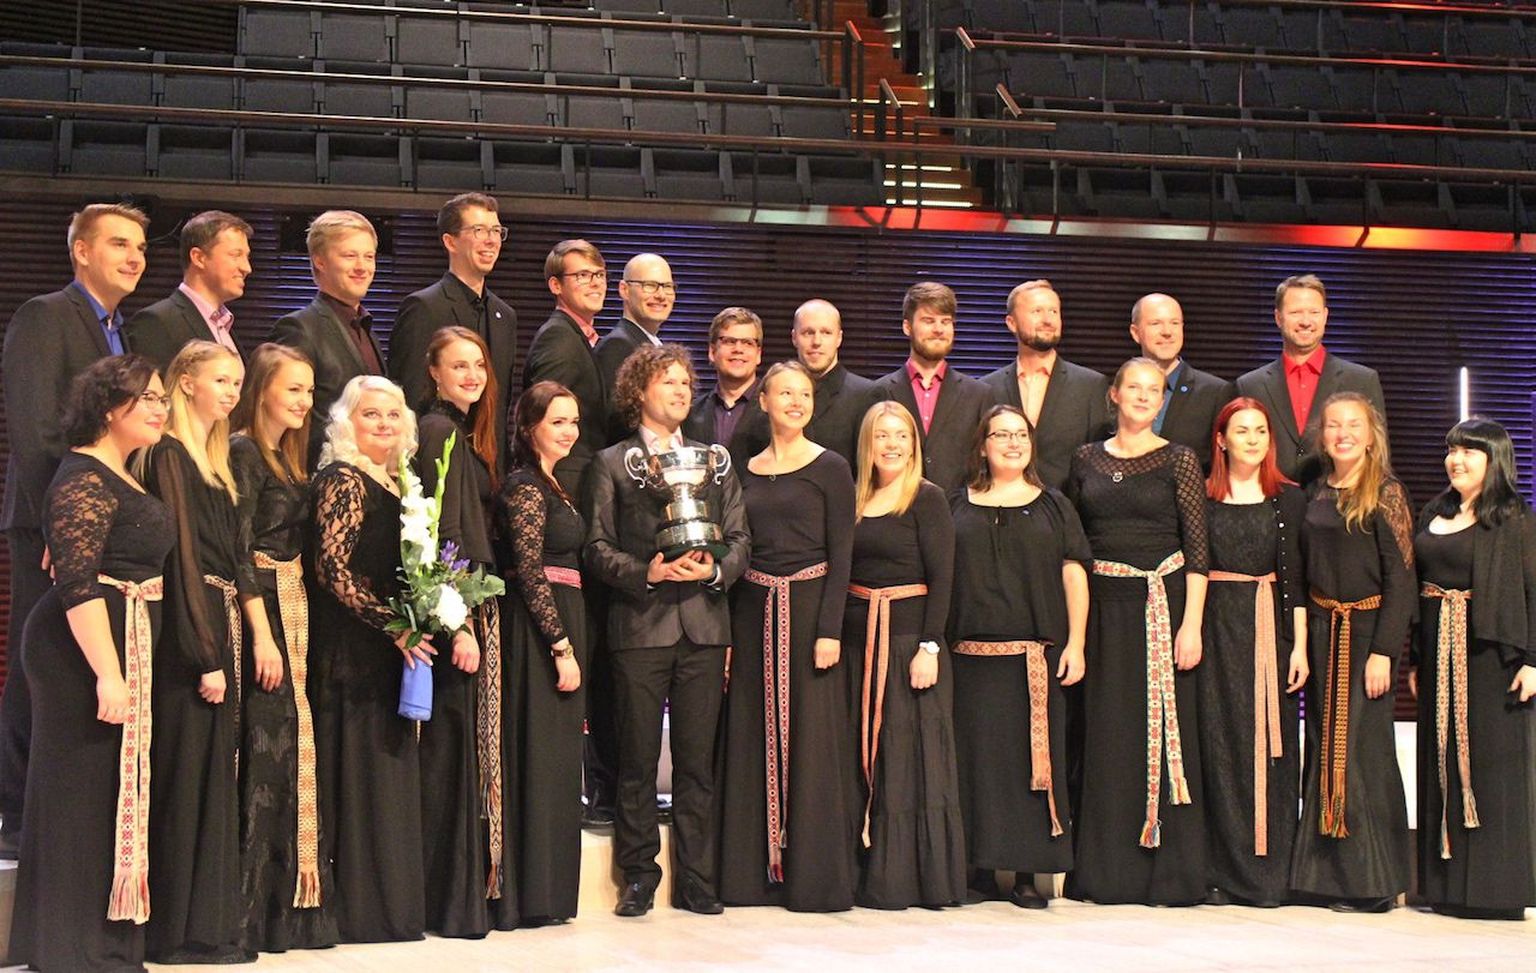 Collegium Musicale võitis oktoobris EBU rahvusvahelise koorikonkursi «Let the Peoples Sing» täiskasvanute kategooria ja kogu konkursi Grand Prix.